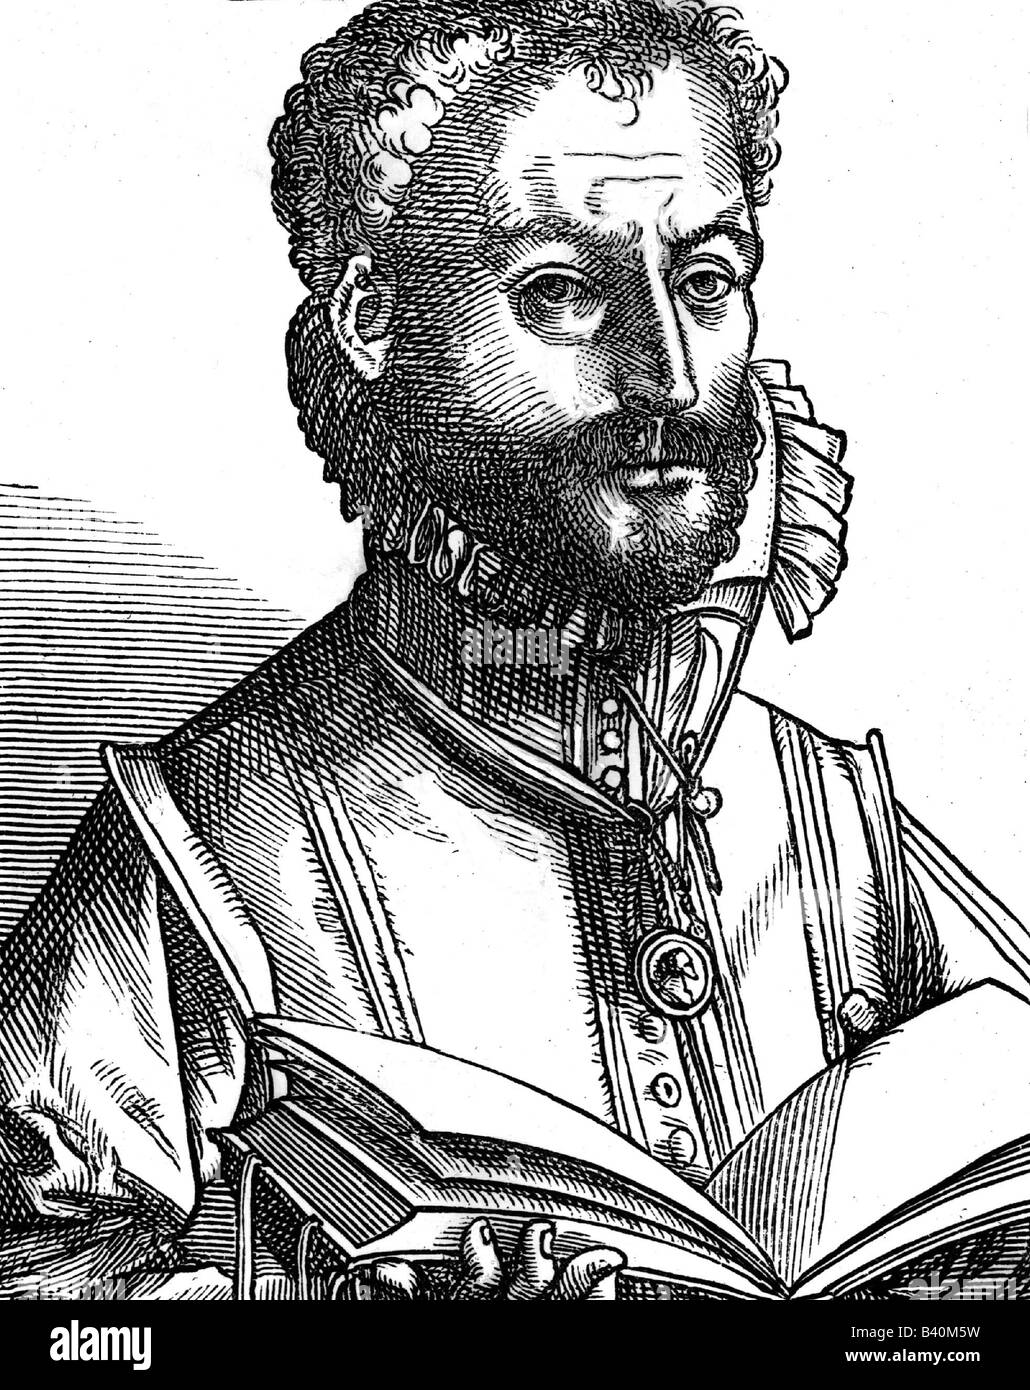 Lassus, Orlande de, 1532 - 14.6.1594, compositeur flamand, demi-longueur, boisée par Tobias Stimurel, XVIe siècle, , Banque D'Images